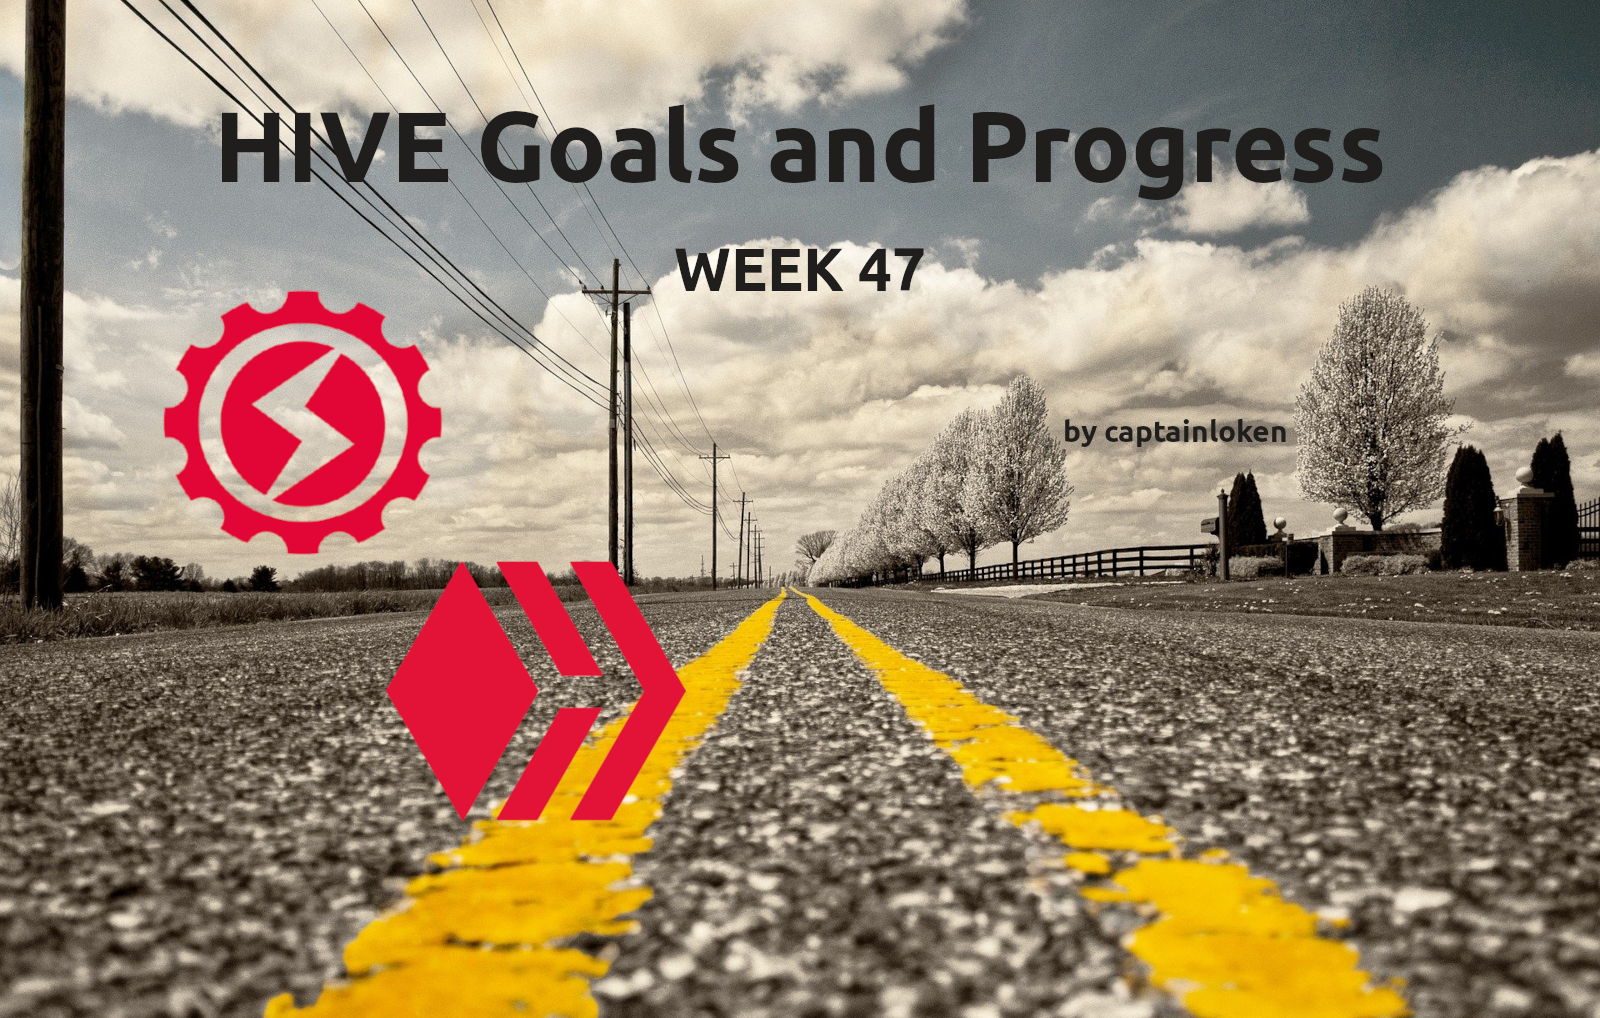 @captainloken/hive-goals-and-progress-week-47